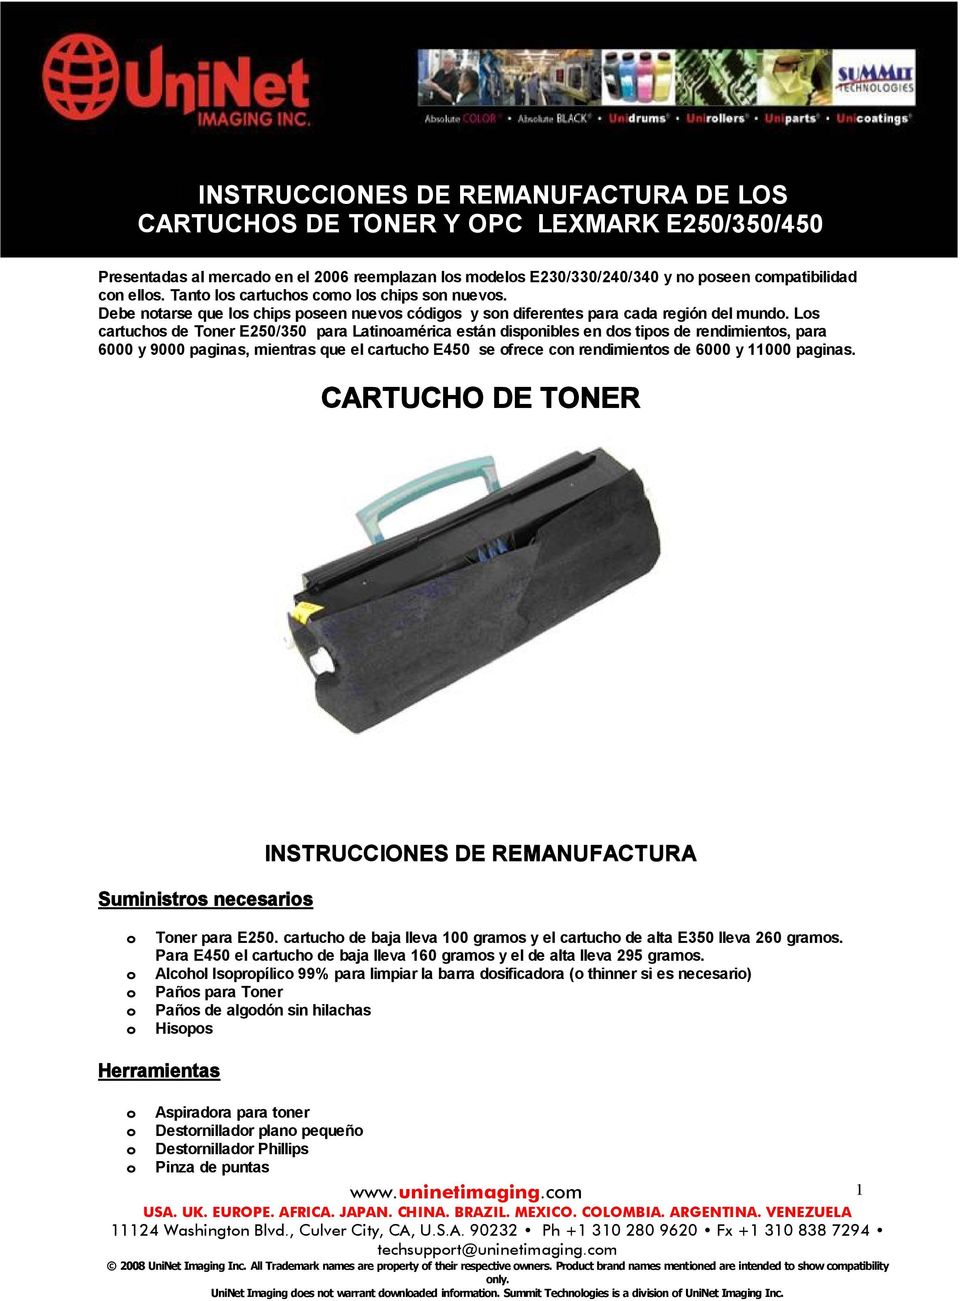 Los cartuchos de Toner E250/350 para Latinoamérica están disponibles en dos tipos de rendimientos, para 6000 y 9000 paginas, mientras que el cartucho E450 se ofrece con rendimientos de 6000 y 11000